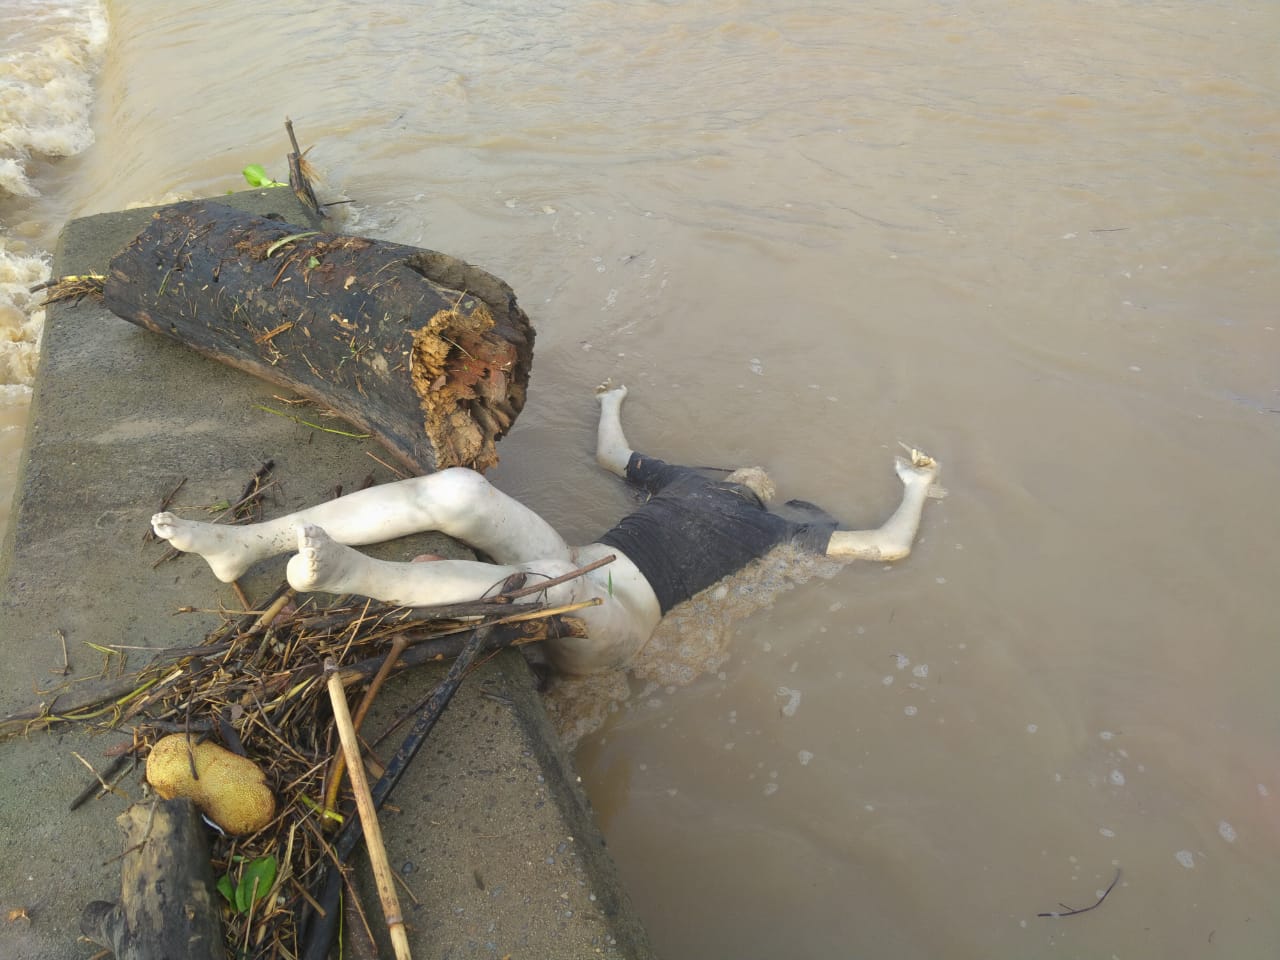 Mayat Warga Pantai Cermin Hanyut di Perbahingan Telah Ditemukan di Sungai Ular Pulau Tagor